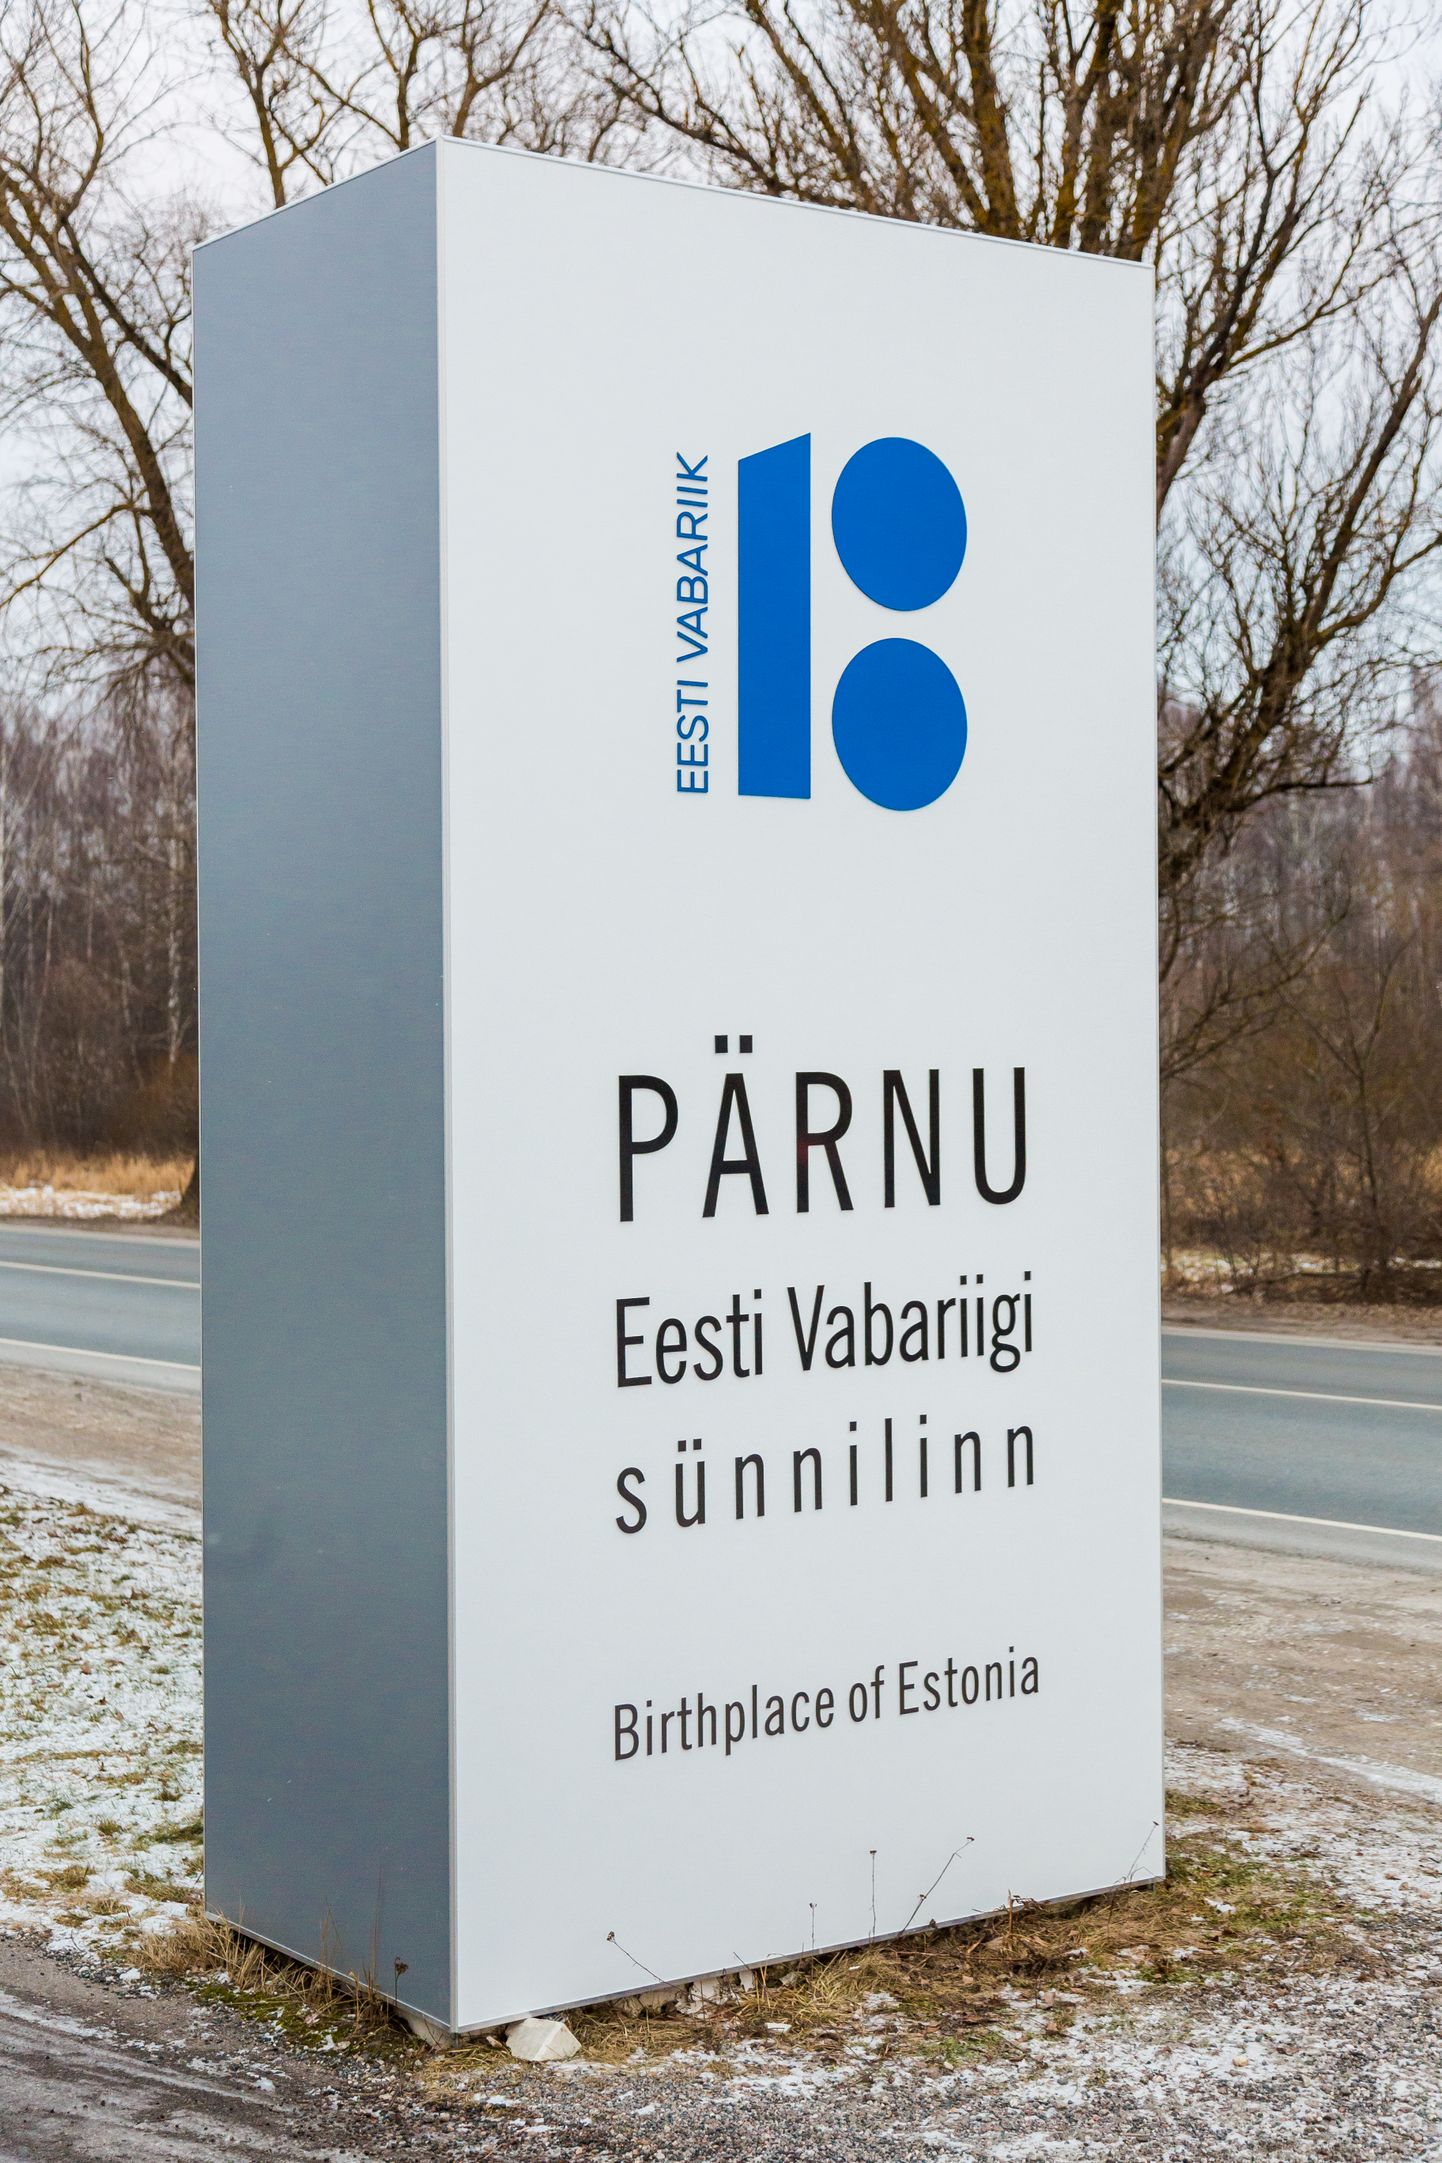 "Eesti Vabariik 100" logo ja linna tunnuslauset "Pärnu – Eesti Vabariigi sünnilinn" eksponeeriv tulp.